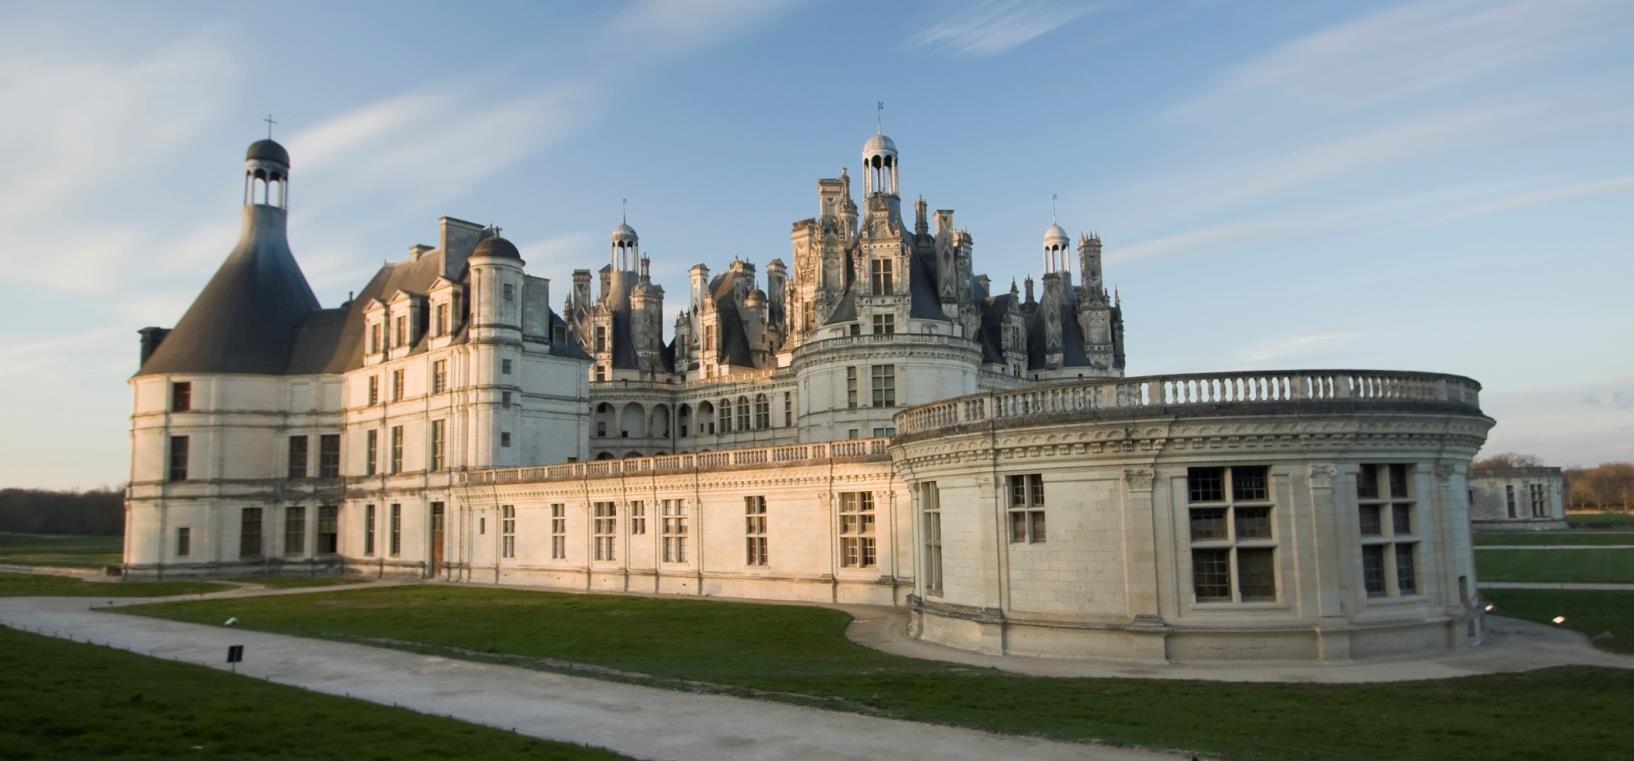 Aquellos que quieran, pueden hacer un recorrido un poco más largo y visitar via Blois, popular gracias al castillo real y la catedral.